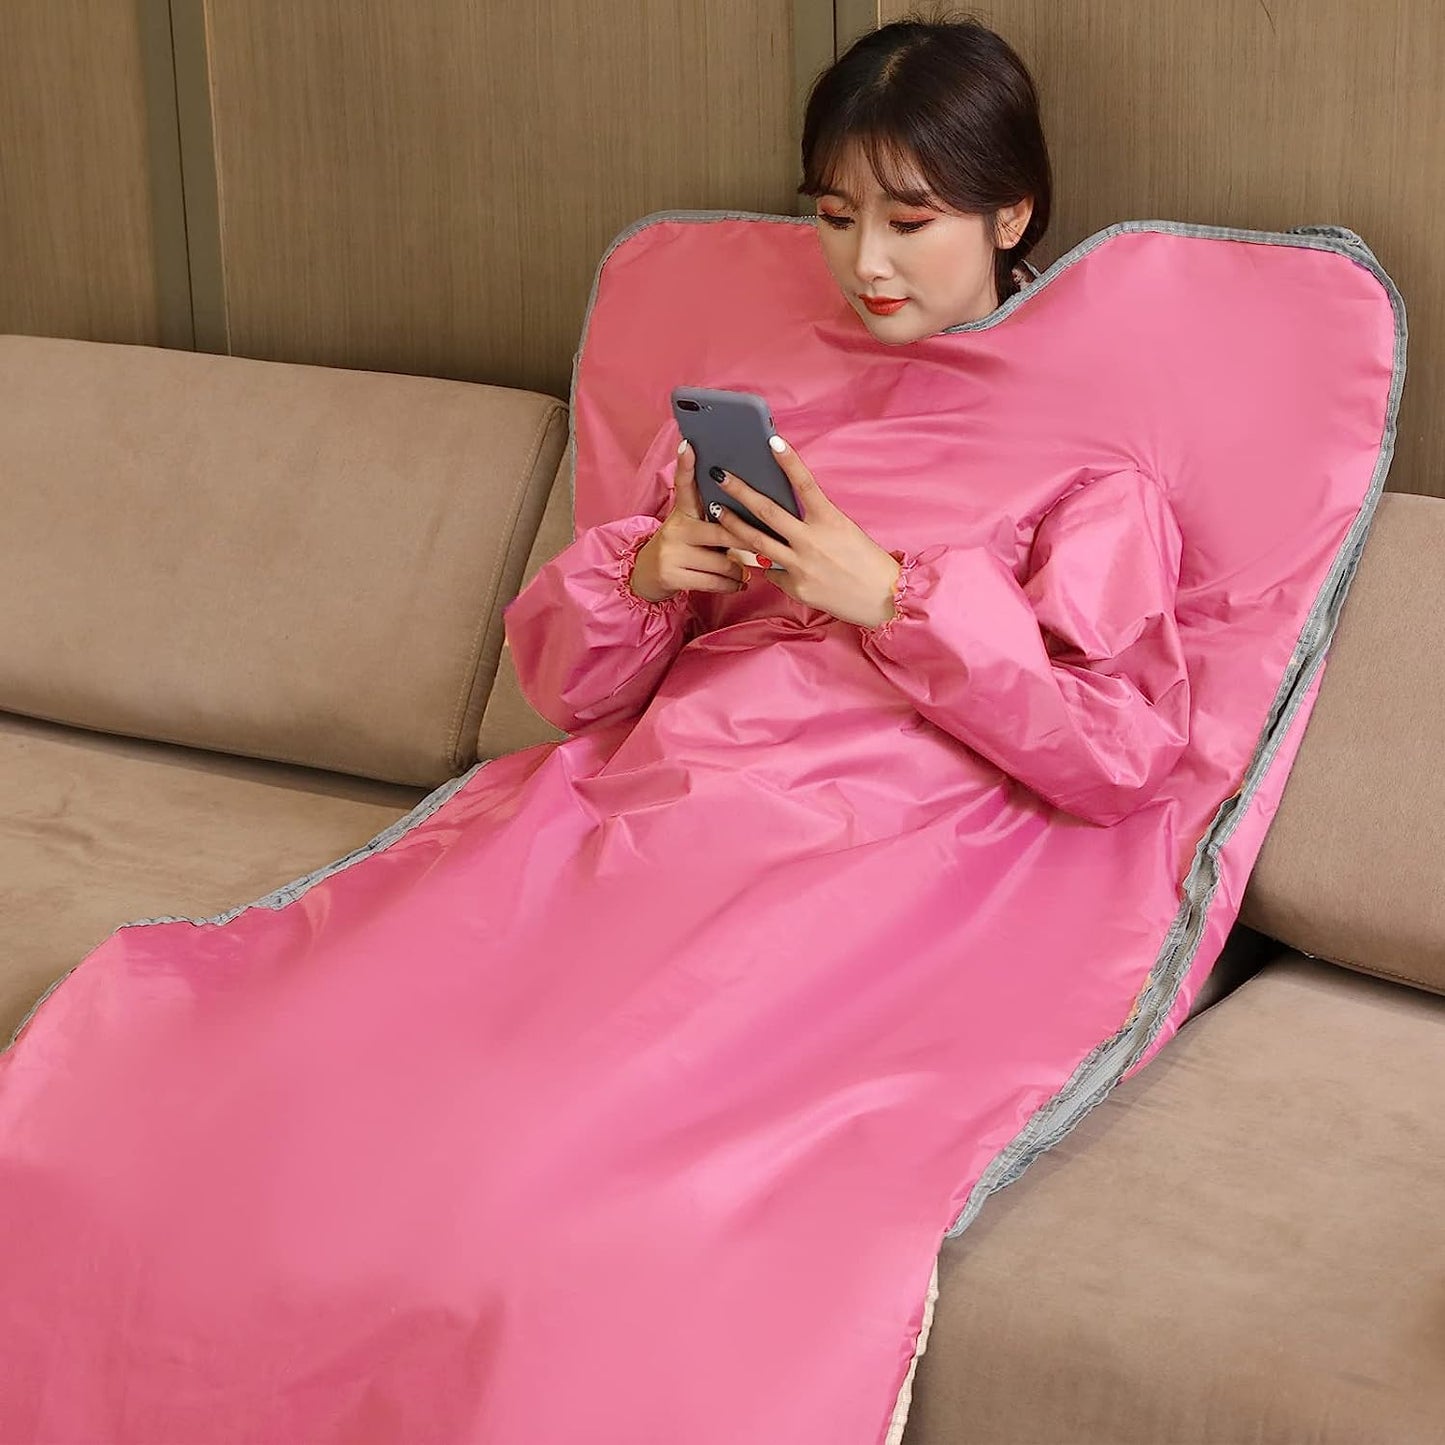 JKIUI Sauna Blanket with Sleeves